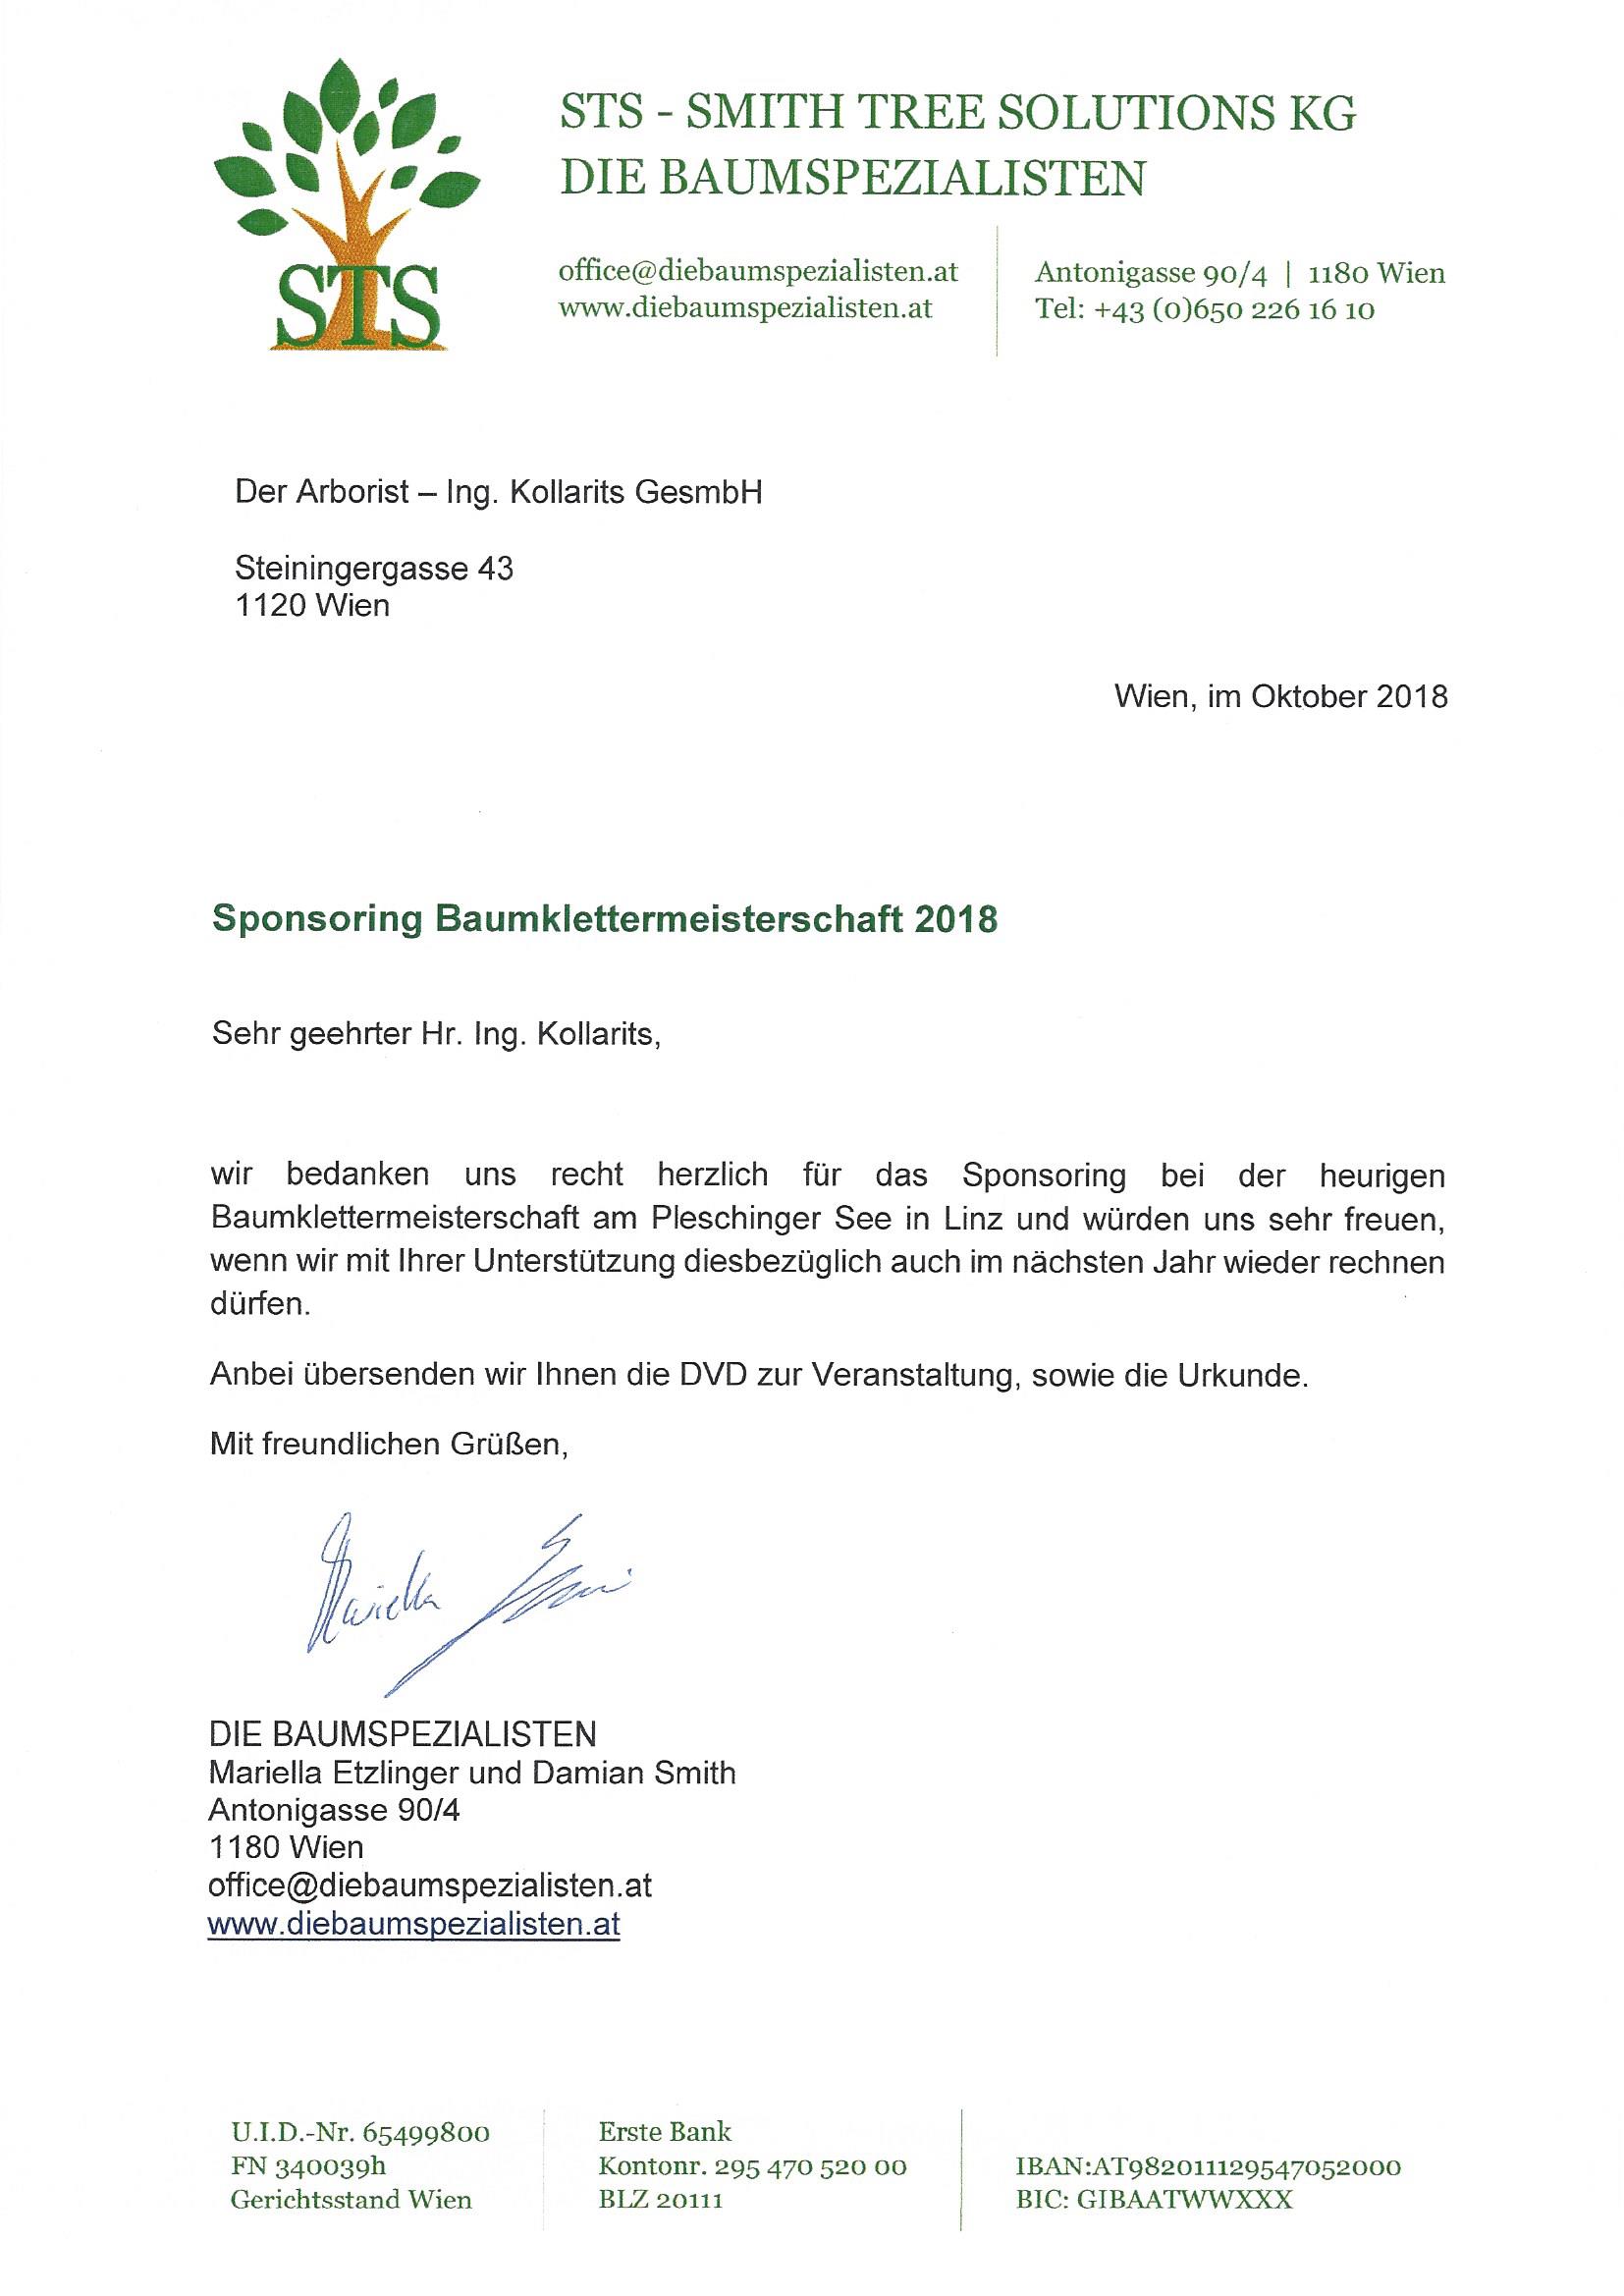 Sponsoring-Der-Arborist-Österreichische-Baumklettermeisterschaft-2018